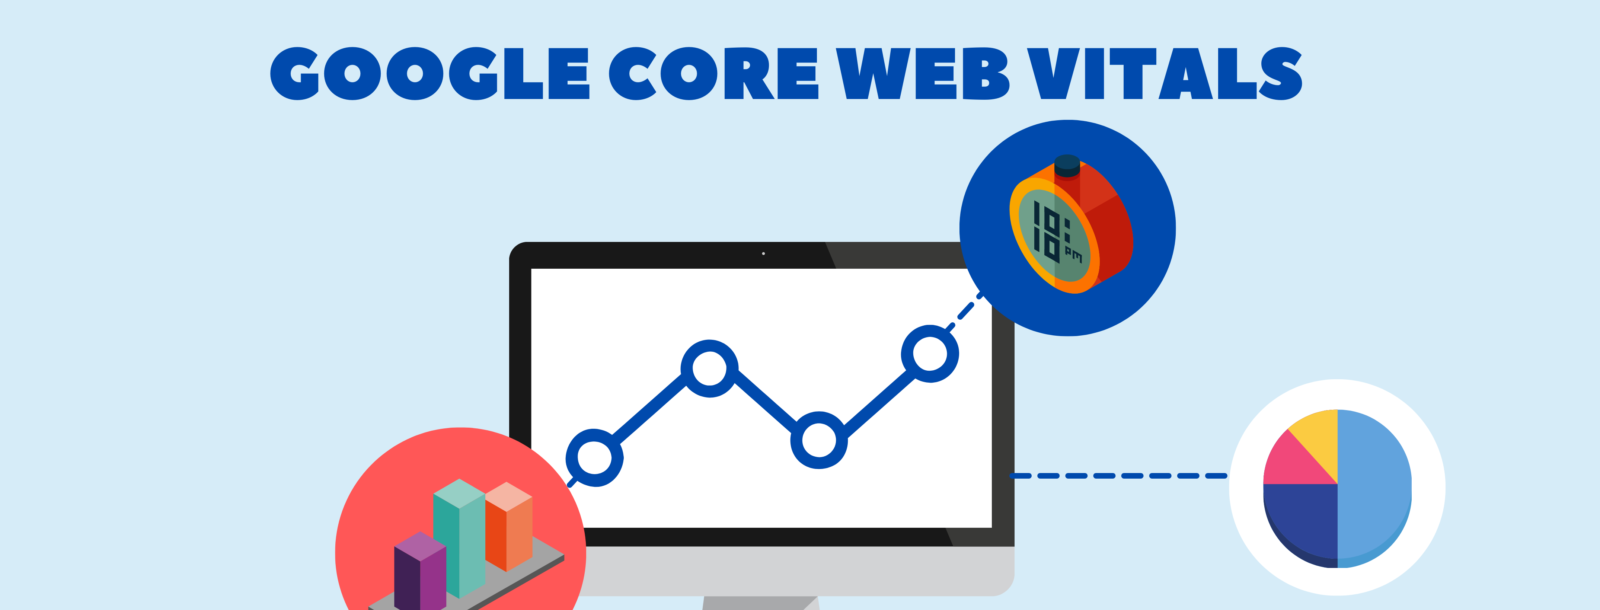 UPDATE: Google Core Web Vitals